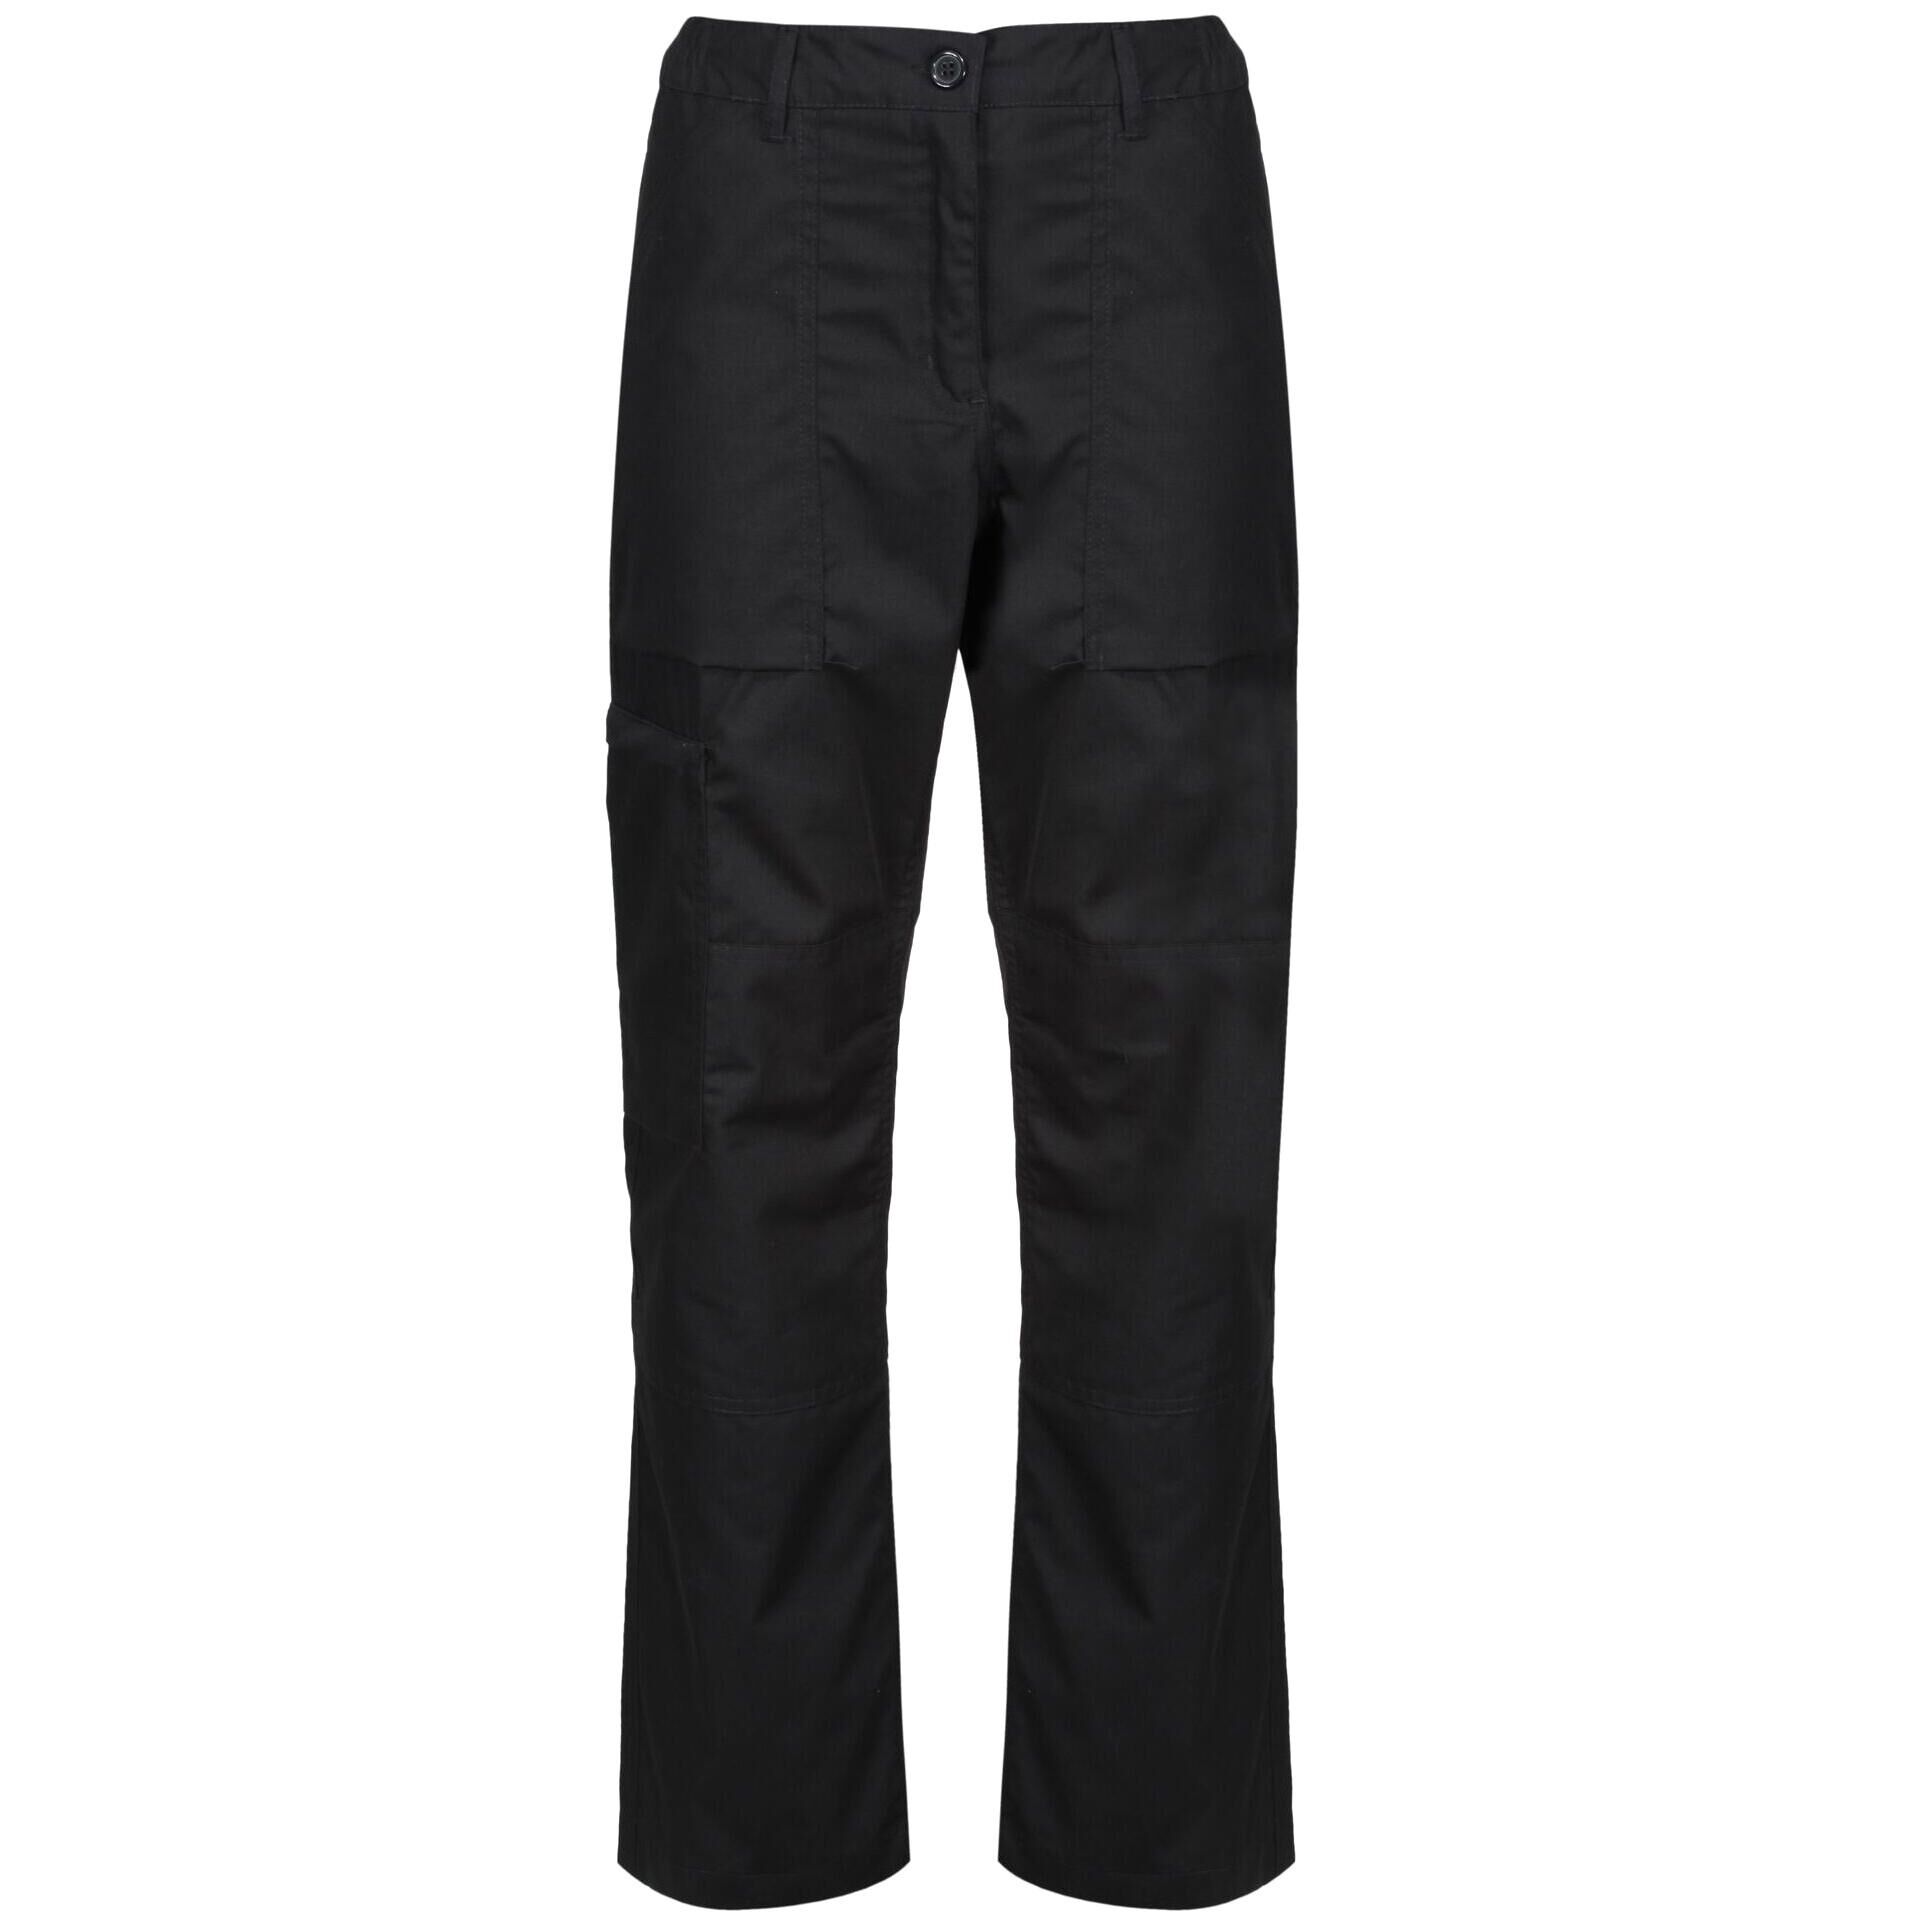 REGATTA Ladies New Action Trouser (Short) / Pants (Black)